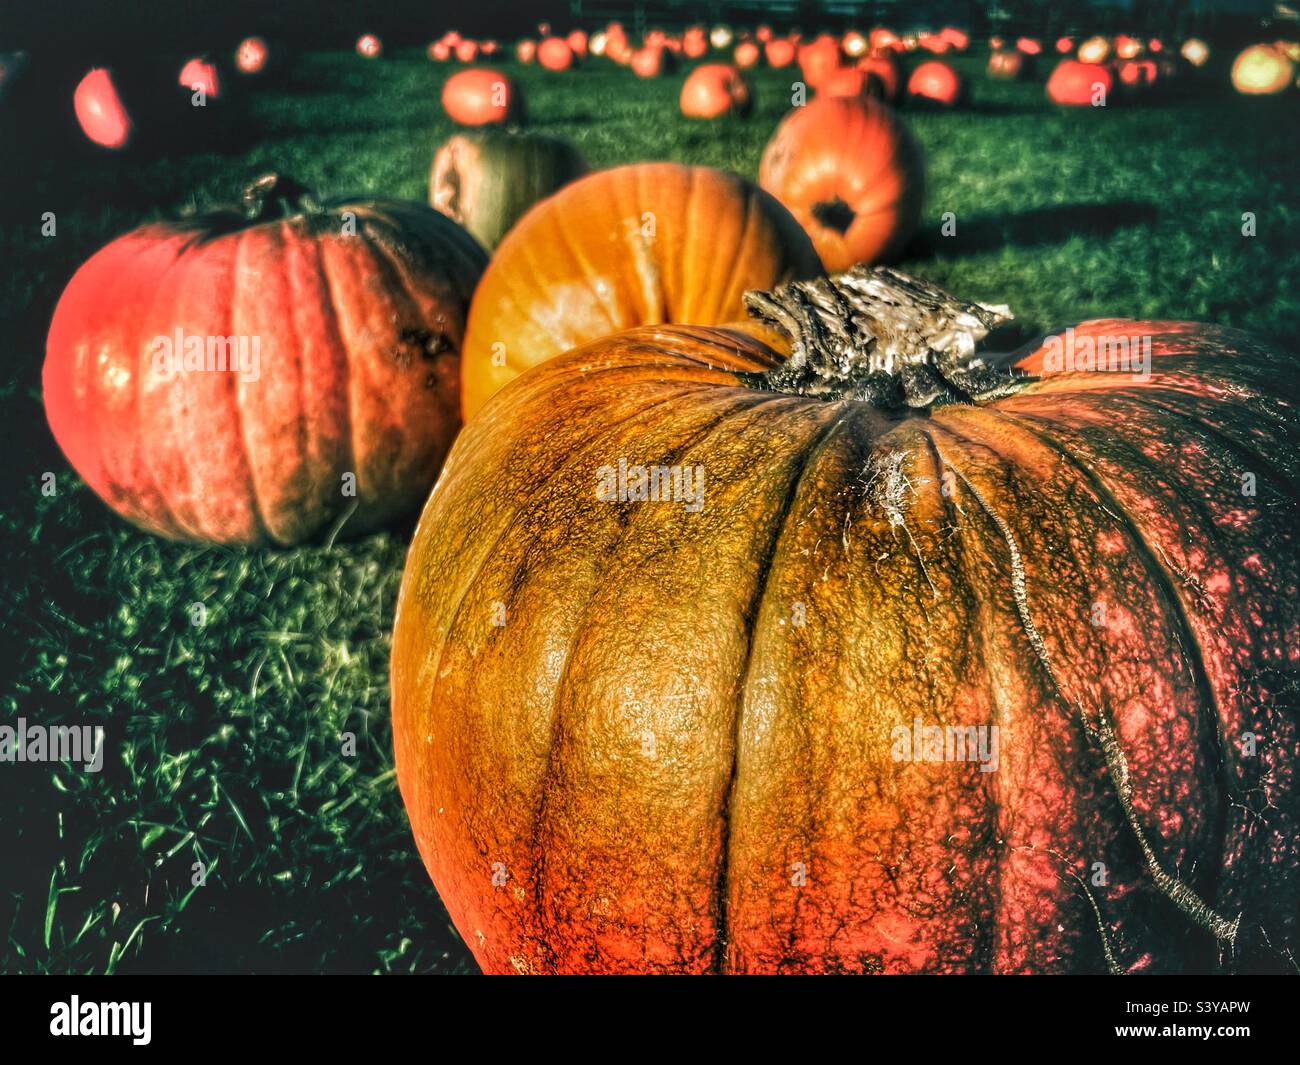 Halloween pumpkin picking in October Stock Photo